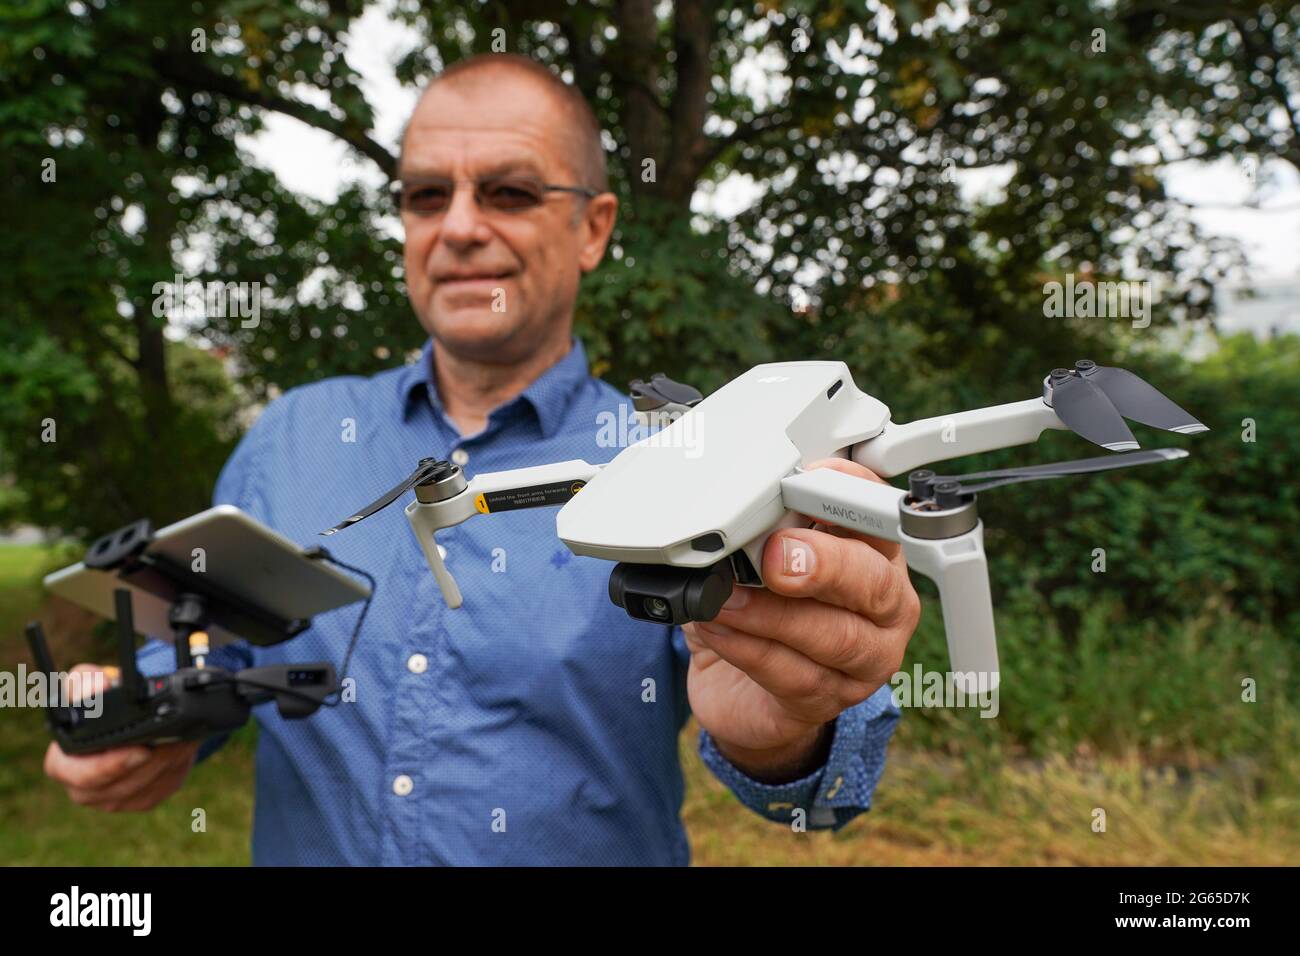 Leipzig, Deutschland. Juli 2021. Ralph Werner von der Quadrocopter Flight  School hält eine Drohne, einen DJI Mavic Mini, in einem Park. Weber bietet  Drohnenpiloten Kurse in sicherem Drohnenflug an. Fliegende Drohnen kommen